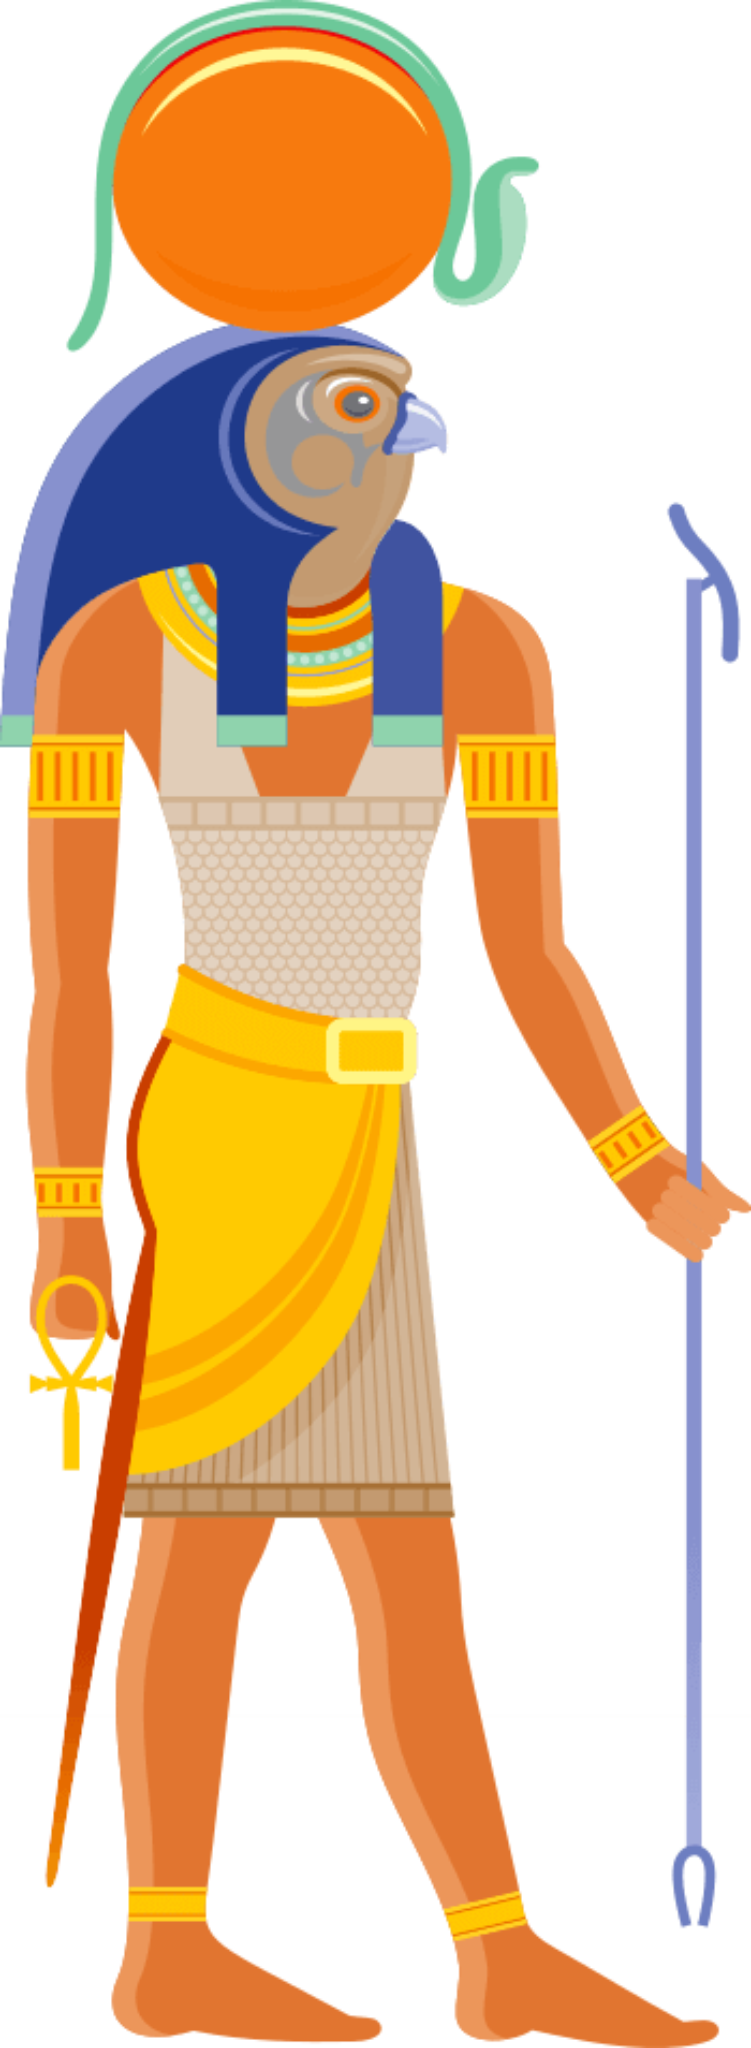 Ra God Of The Sun In Egyptian Mythology Symbol Sage